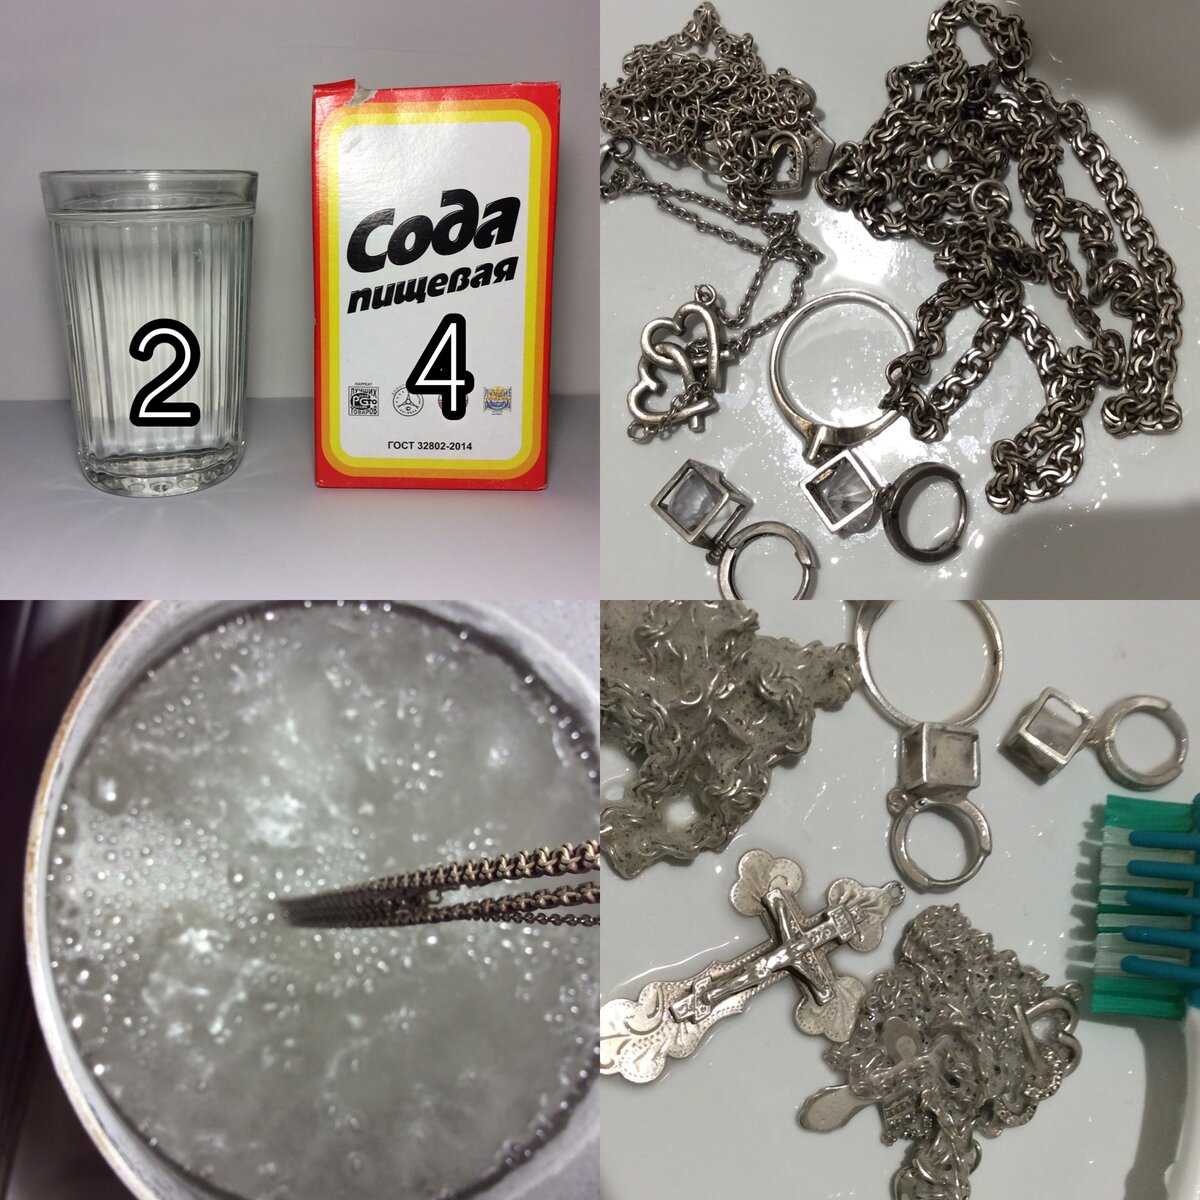 Как почистить серебро от темного налета | ювелир.info